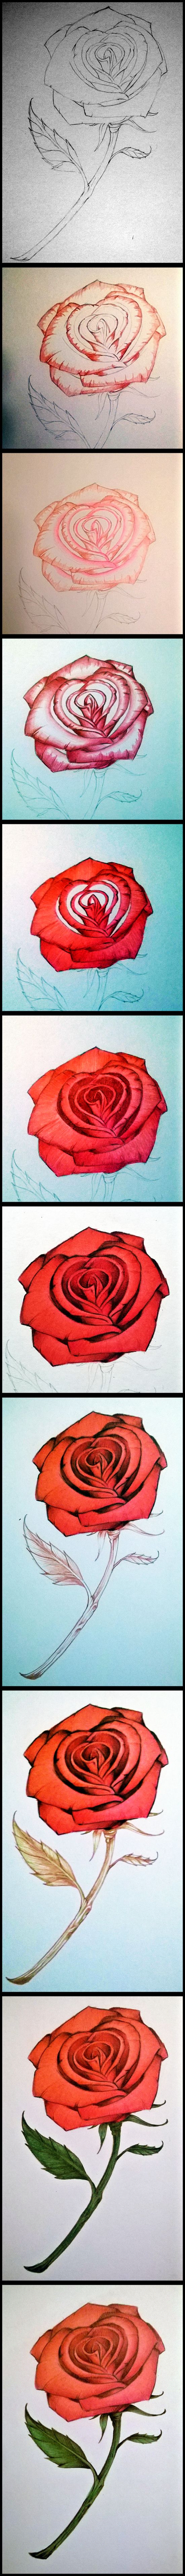 colored pencil rose